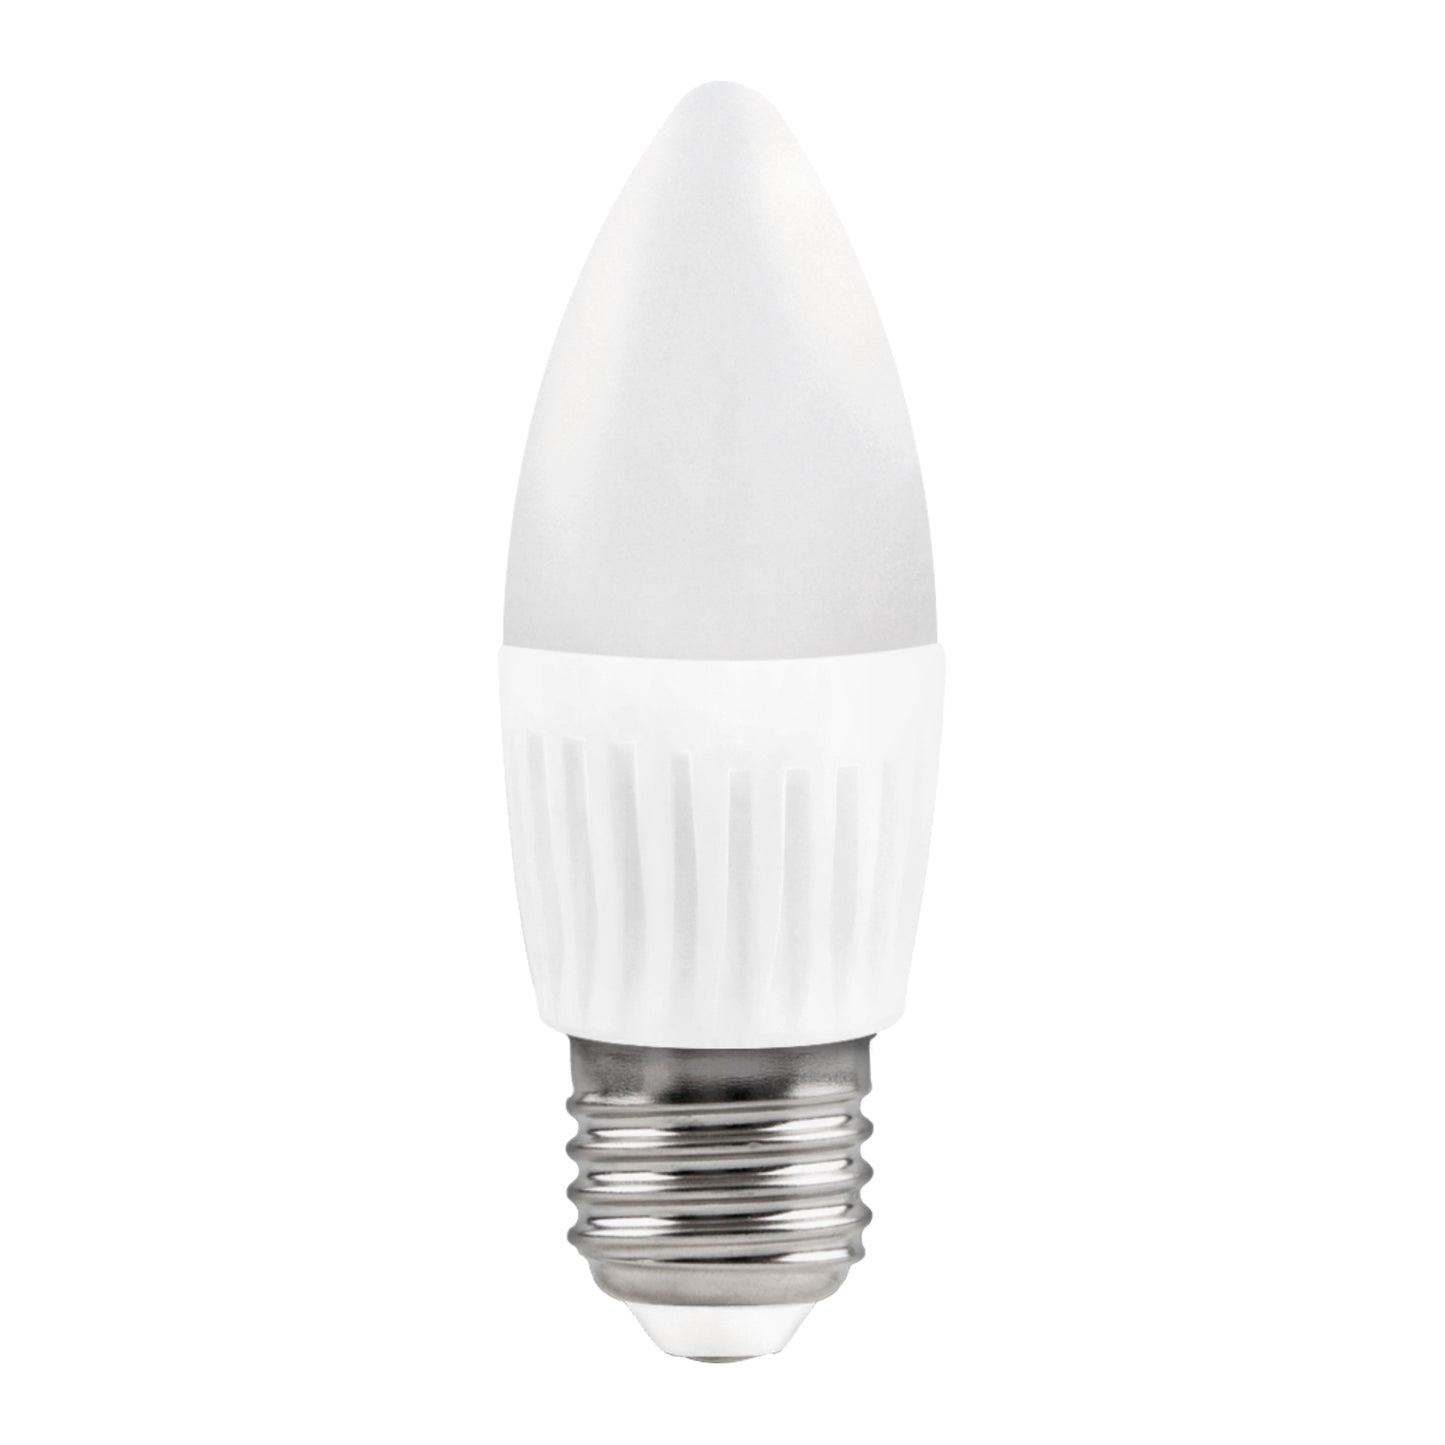 LED LAMP CANDLE MATEL E27 10W COLD 